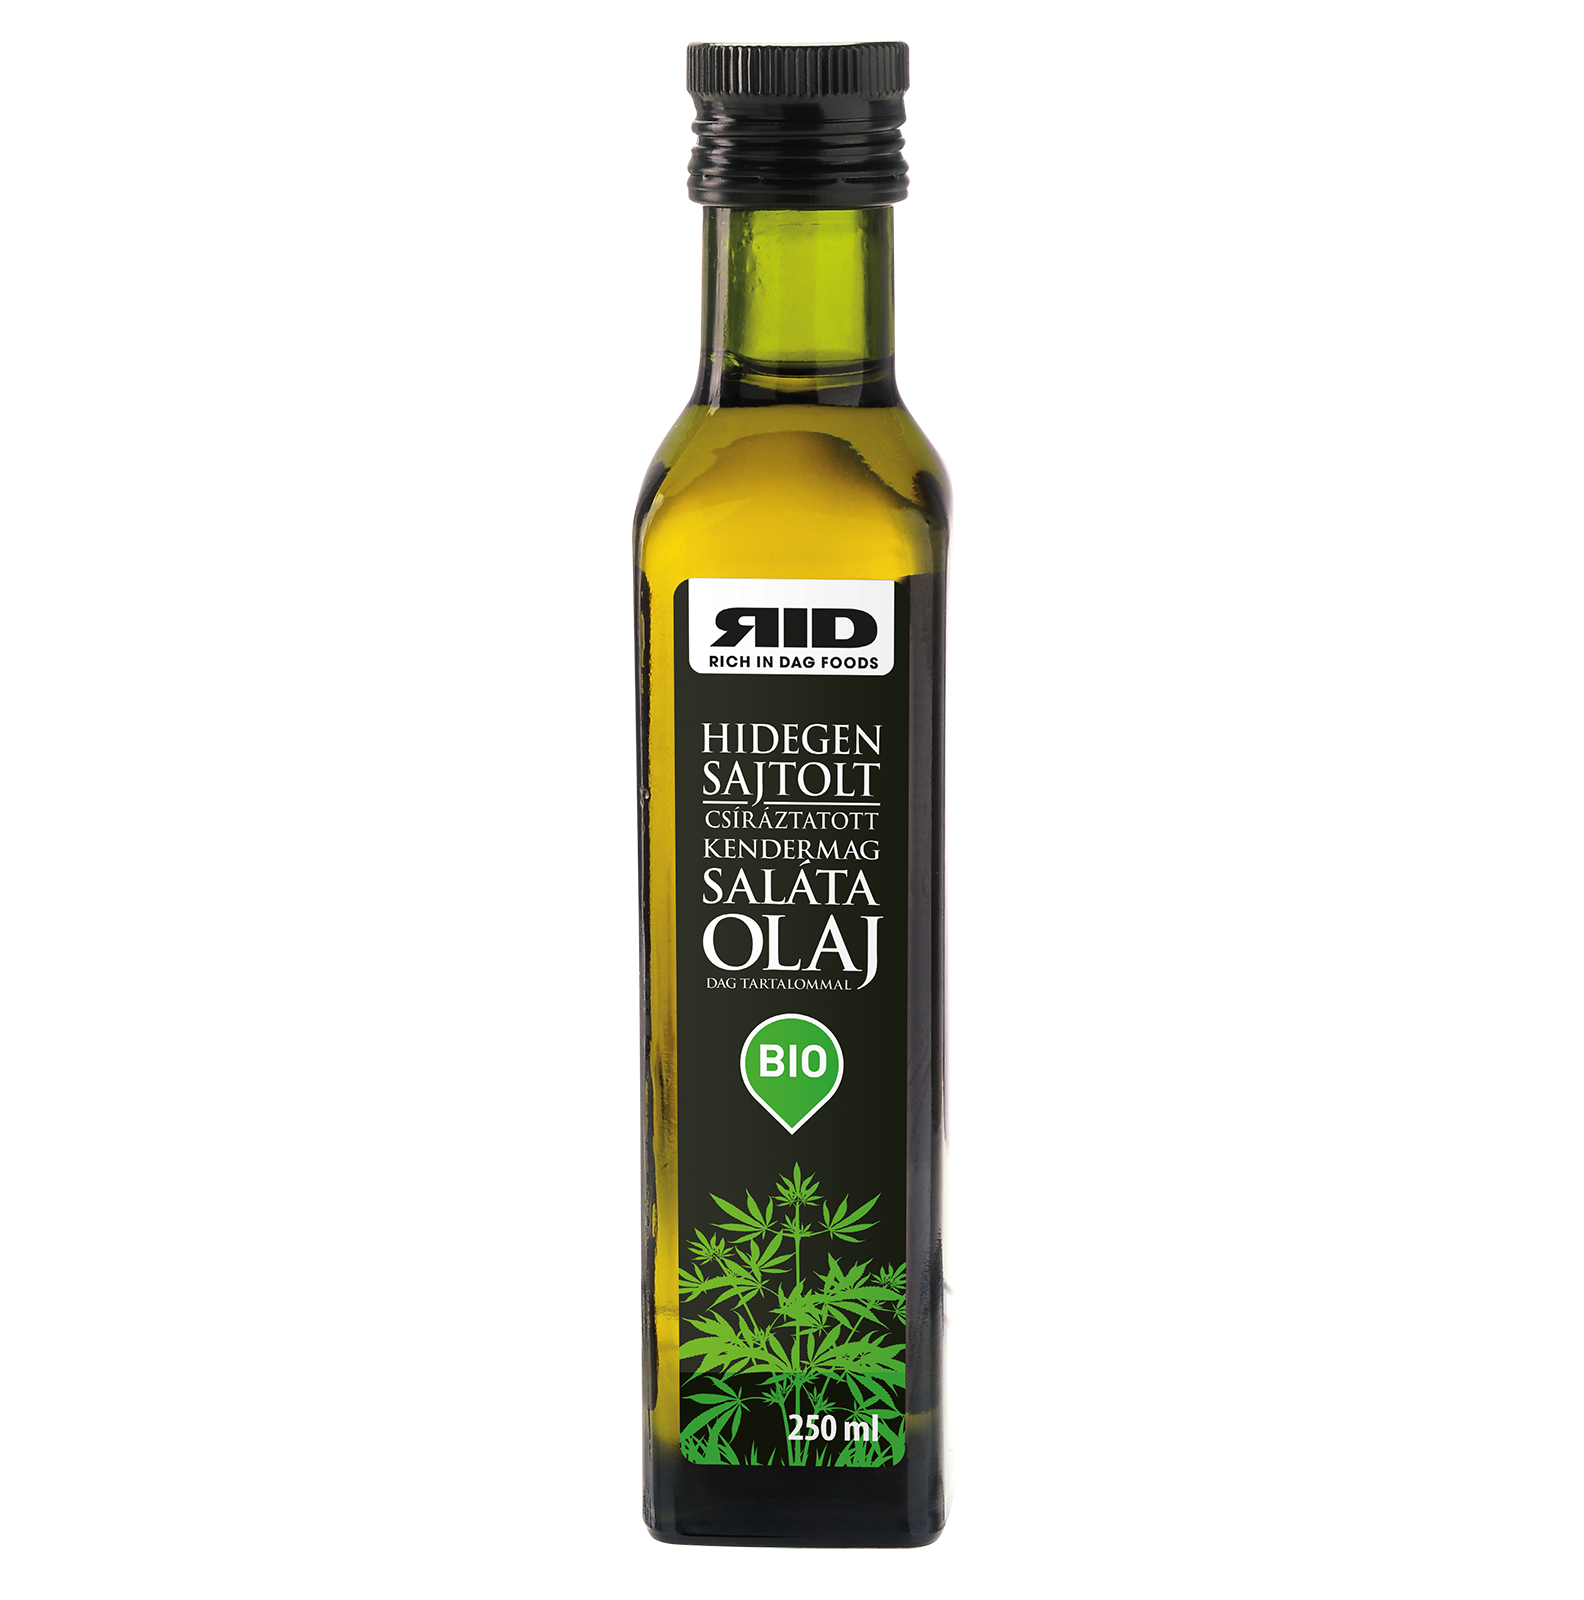 Germinated hemp seed oil. Salad oil. 